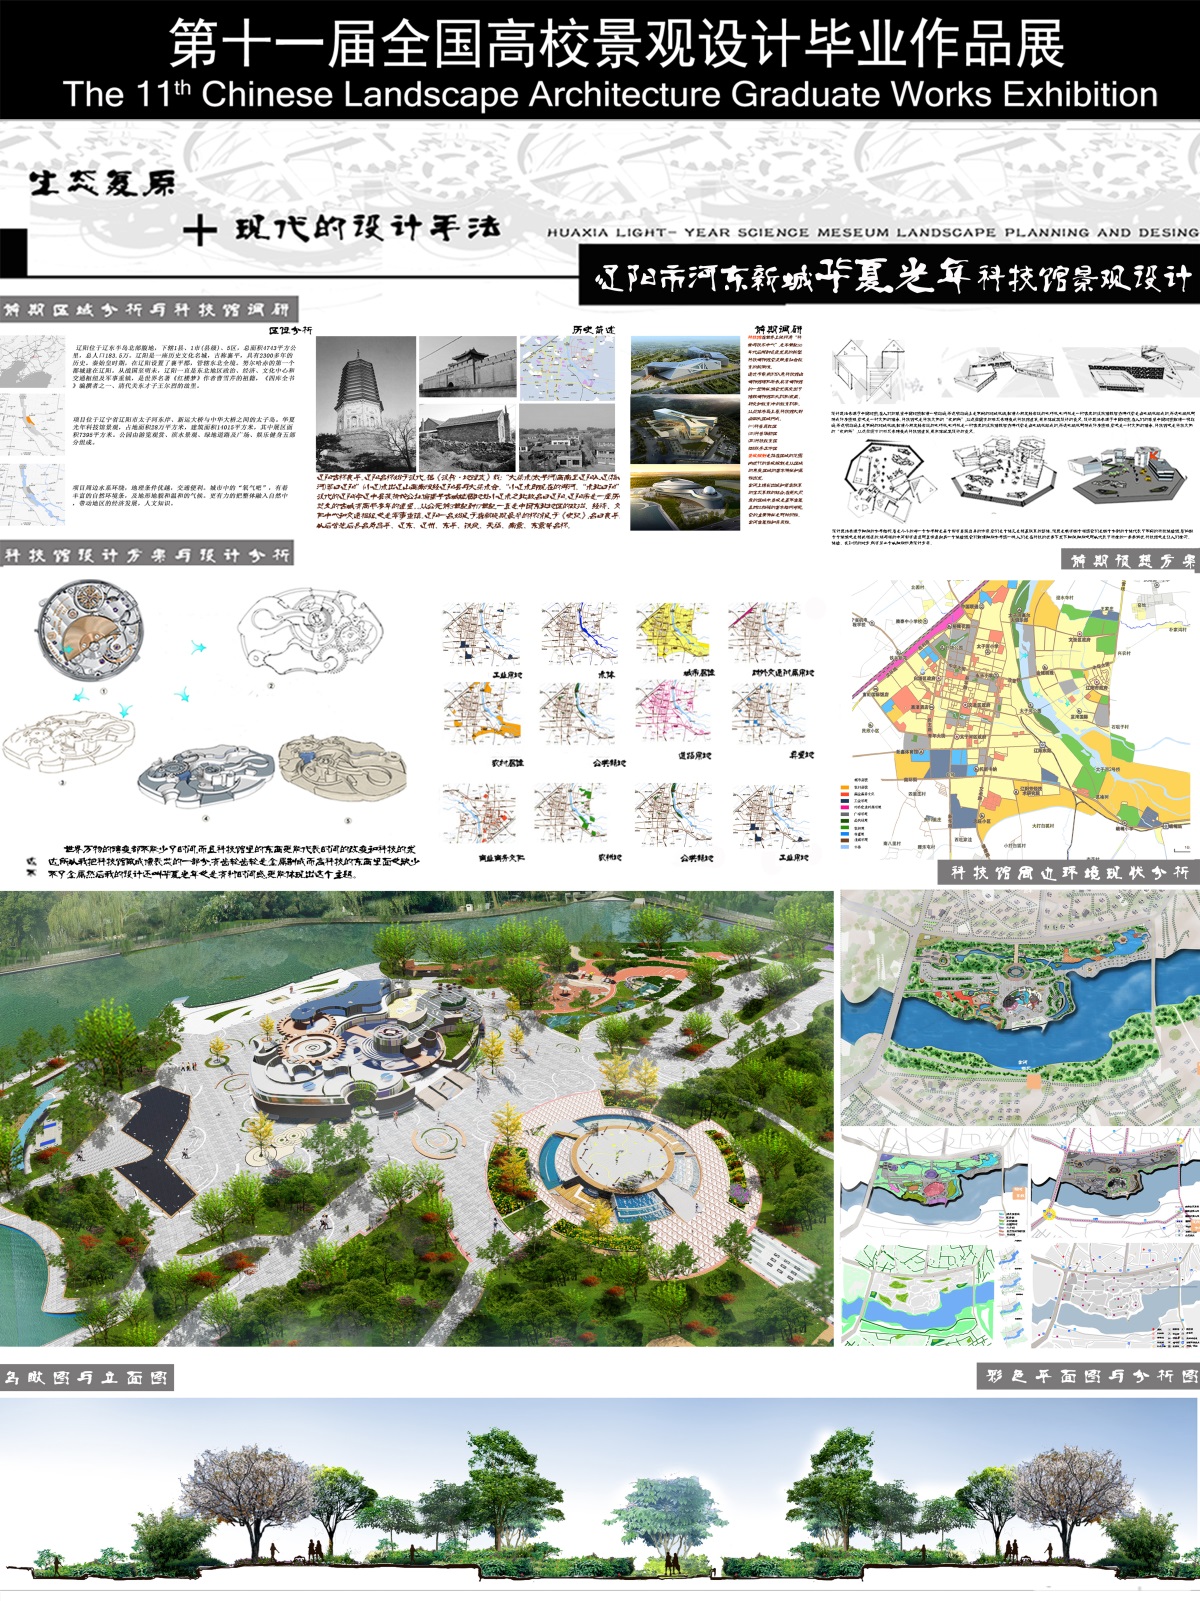 辽阳市河东新城华夏光年科技馆景观规划设计-2